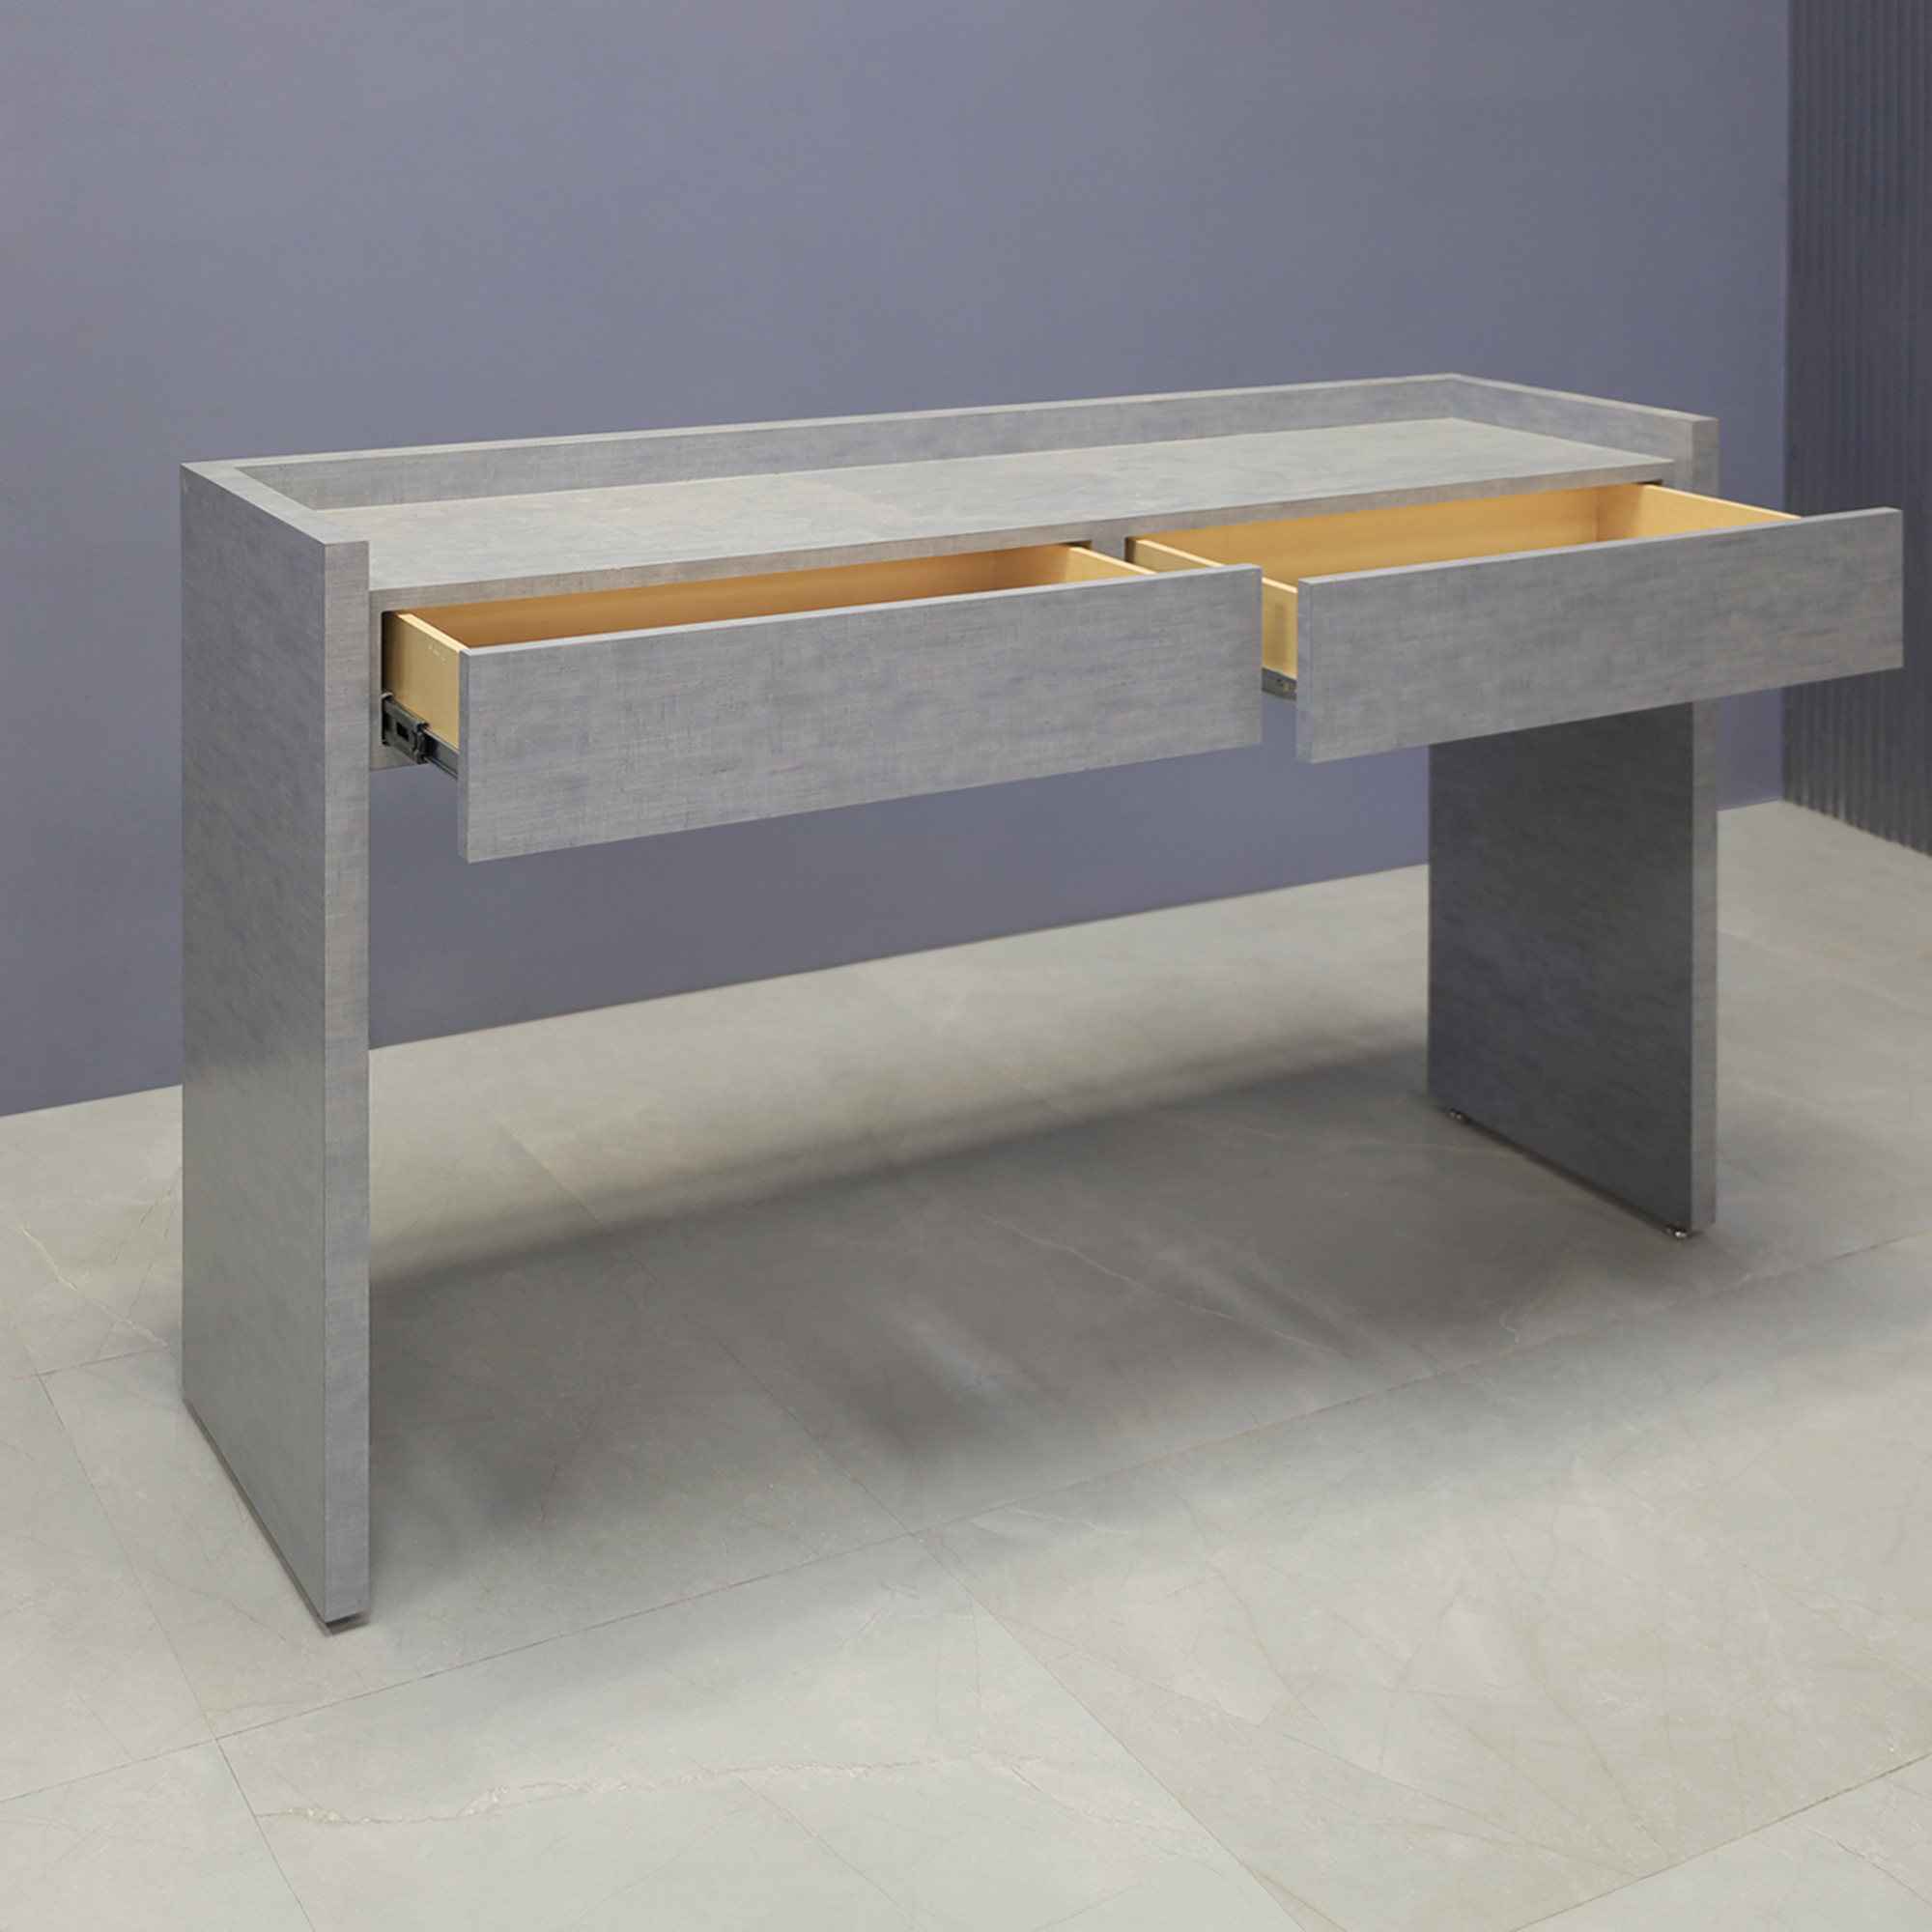 60-inch Avenue Console Table in silver alchemy matte laminate console, shown here.